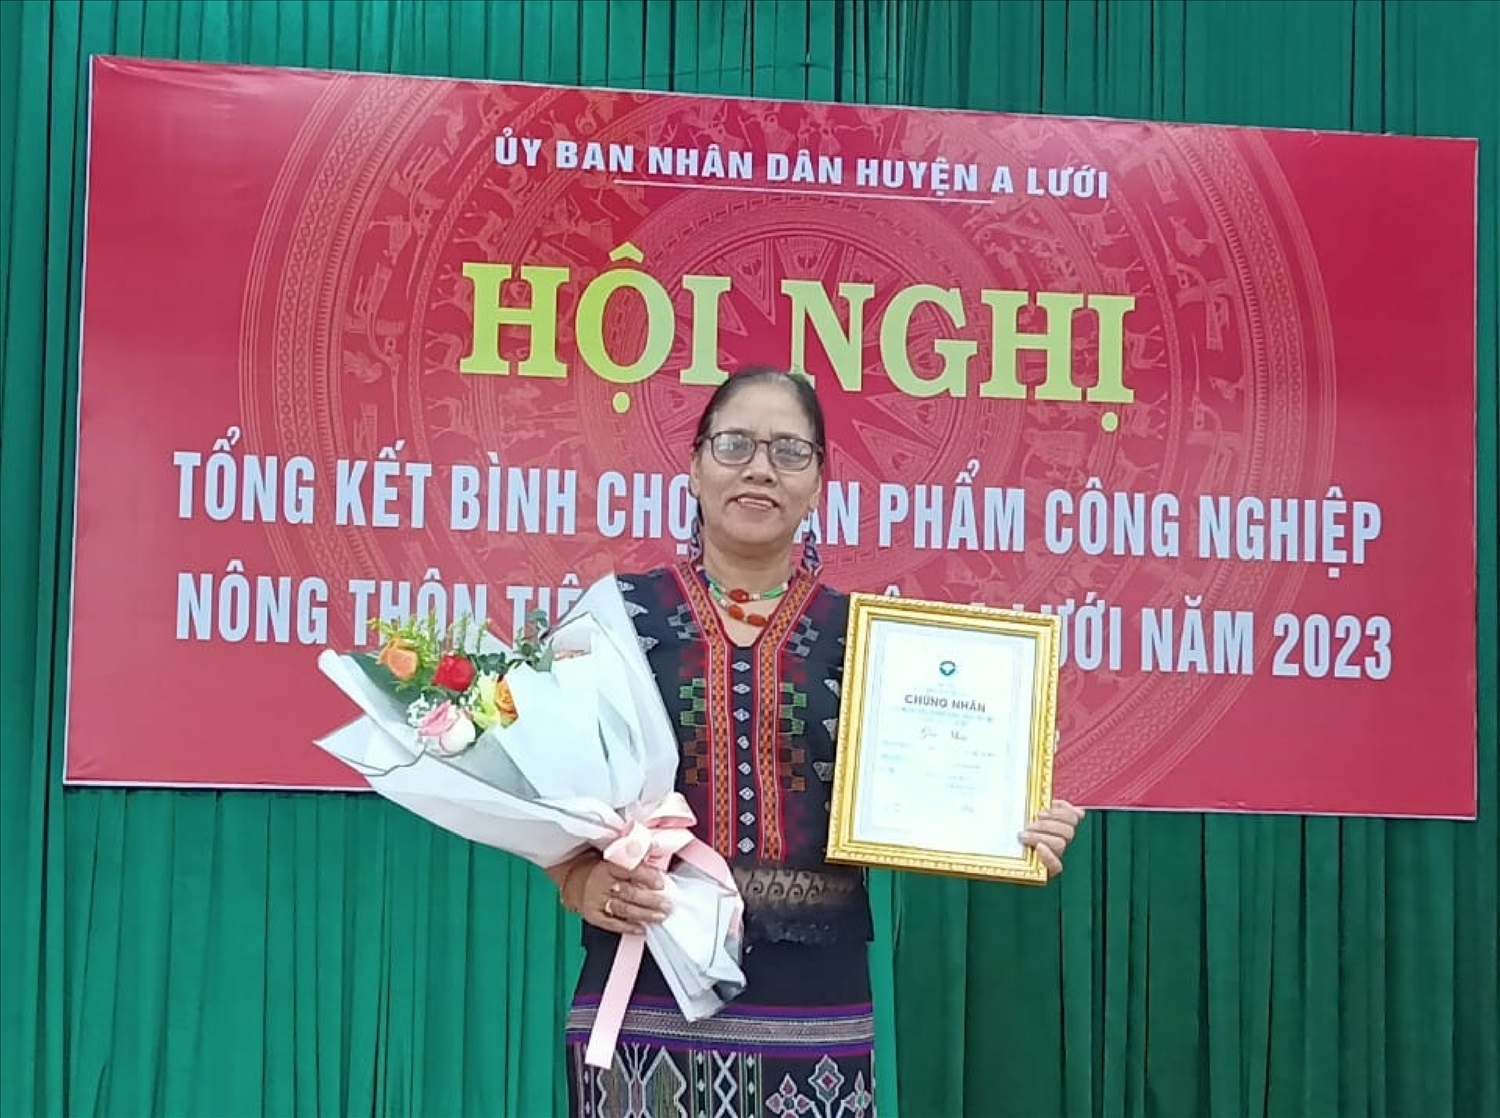 Nghệ nhân Mai Thị Hợp, Chủ nhiệm HTX Thổ cẩm xanh AzaKooh vinh dự được nhận giải Nhất trong cuộc thi bình chọn sản phẩm công nghiệp, nông thôn tiêu biểu cấp huyện năm 2023.